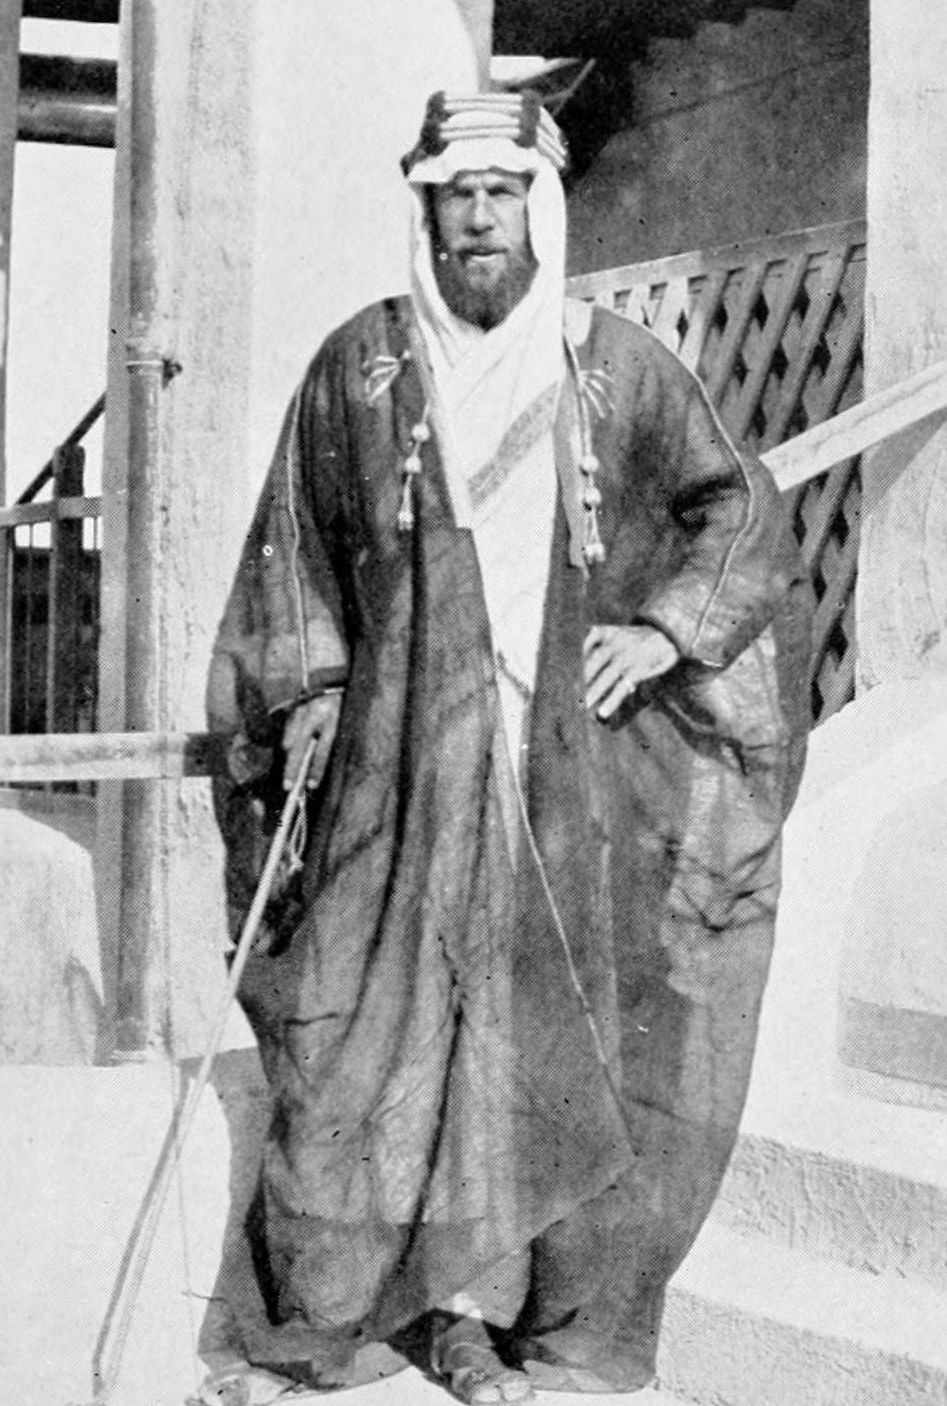 الحاج عبد الله جون فيلبي الجاسوس الانجليزي الذي صنع مملكة آل سعود الجزائر اليوم